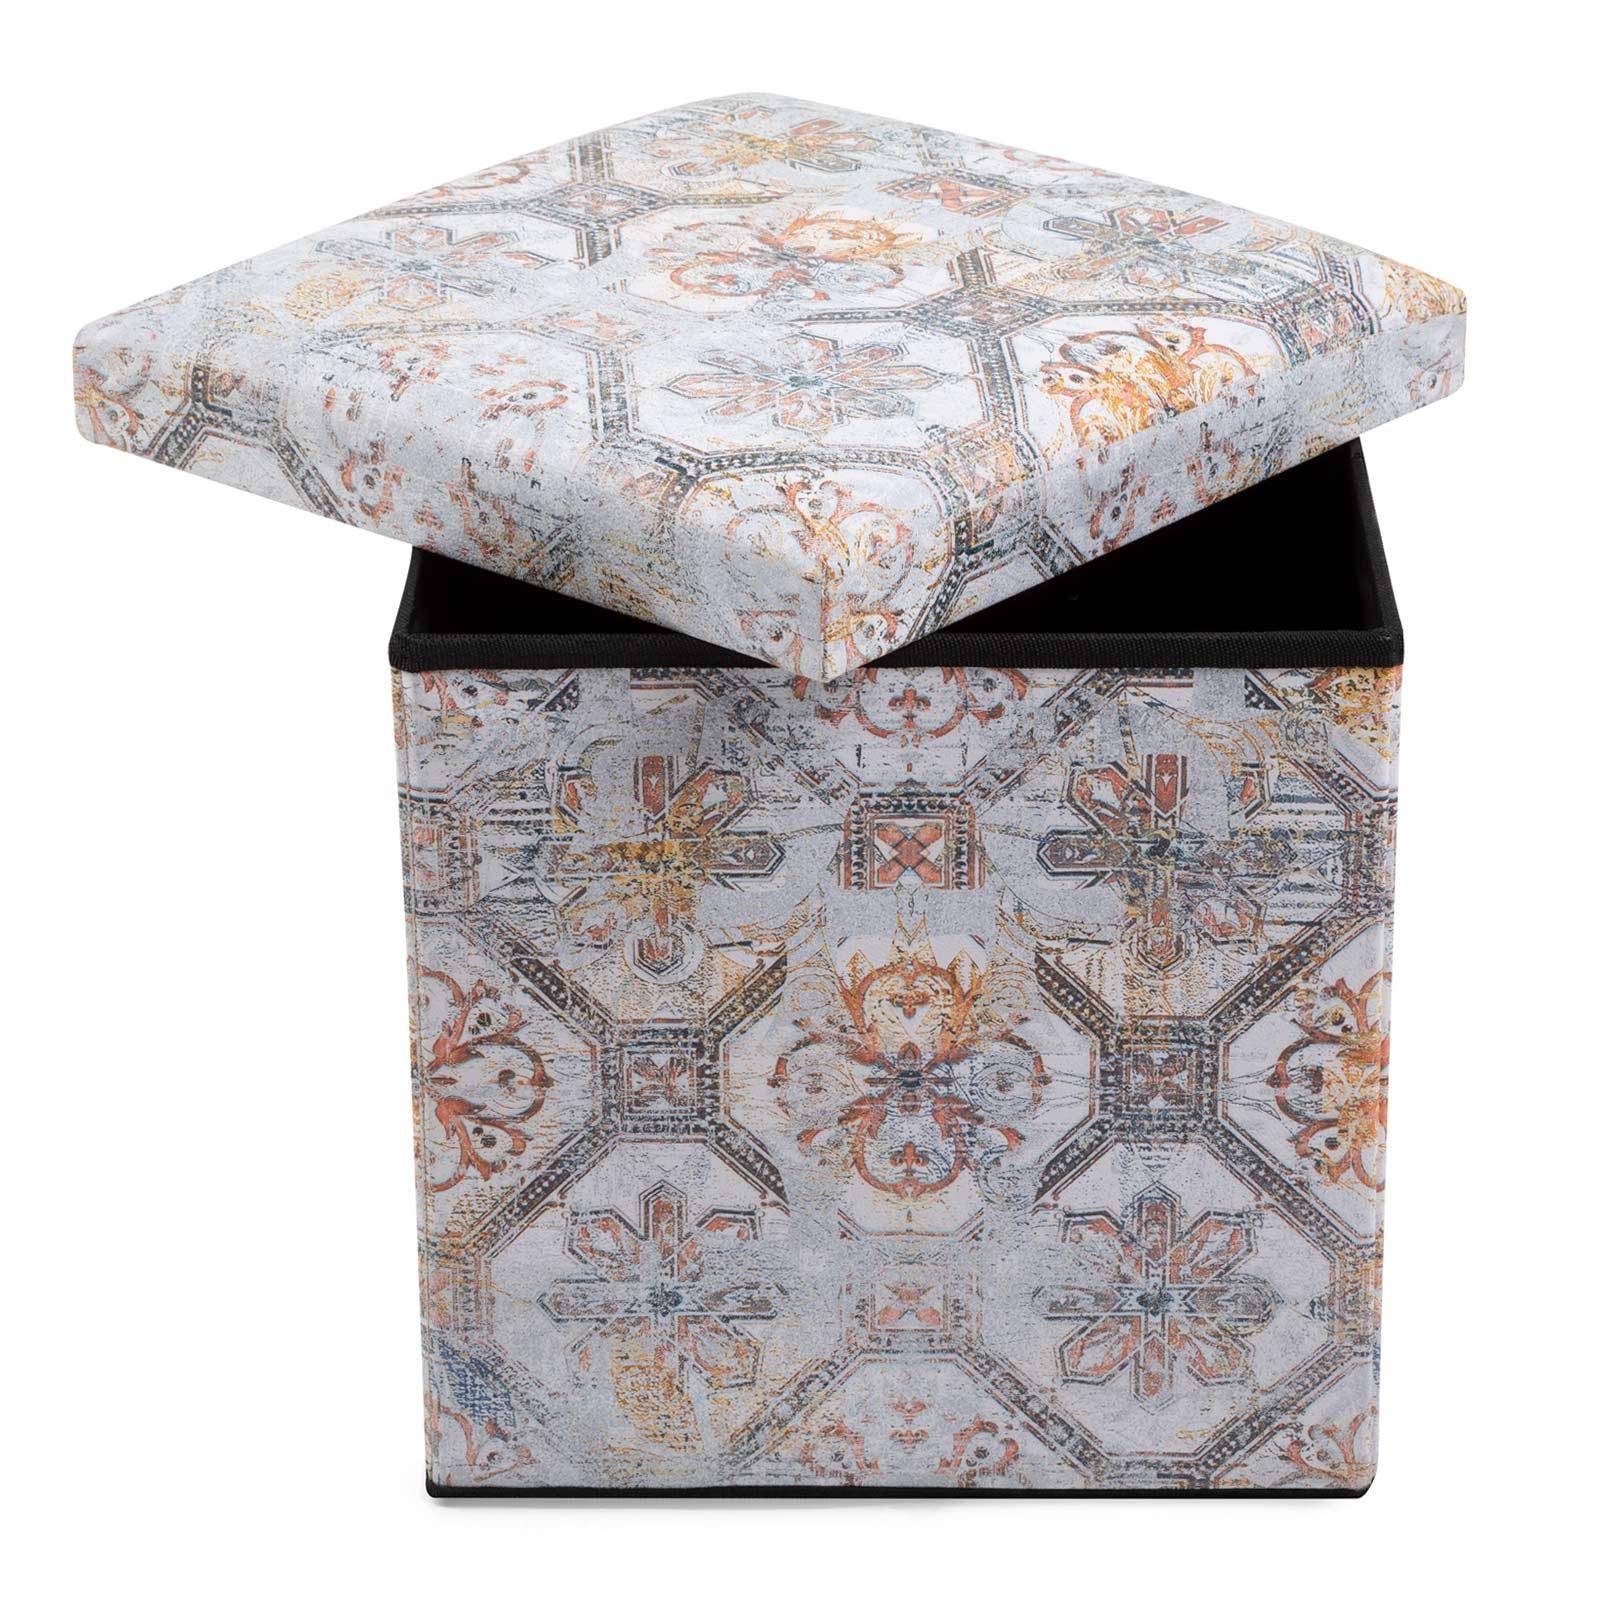 Scatola pouf contenitore 35 cm quadrato con fantasia etnica con pattern  geometrico